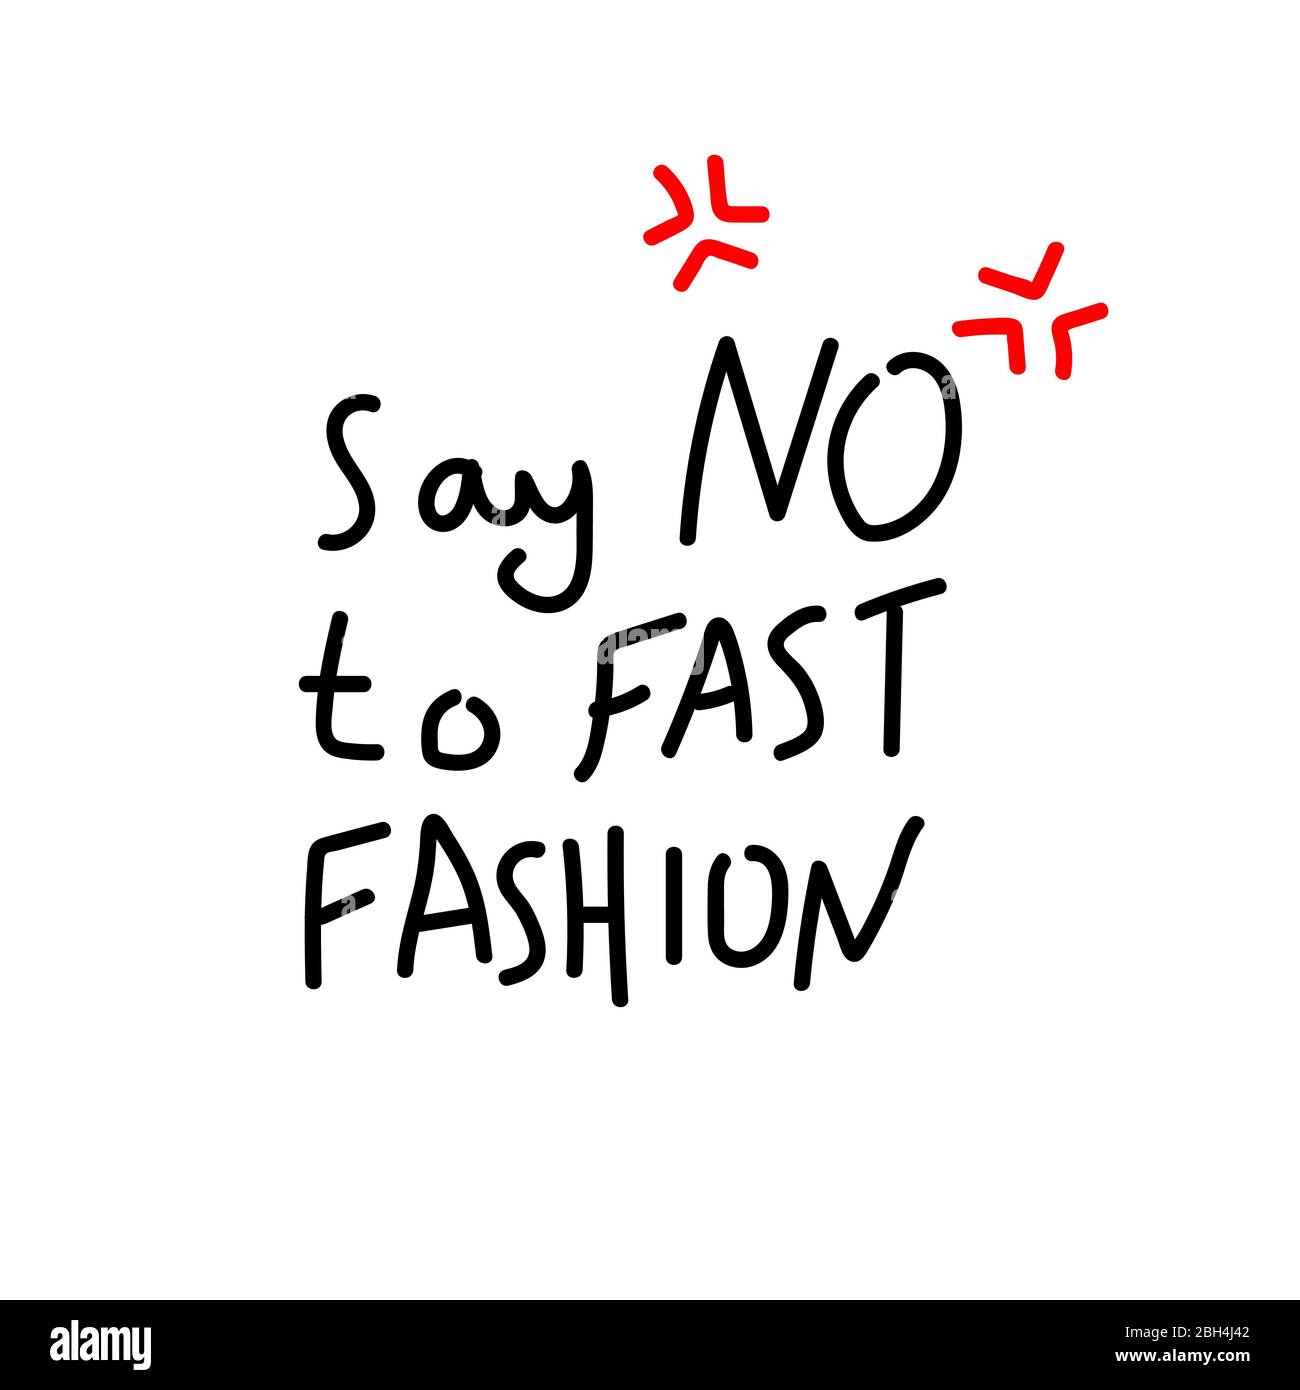 Diga NO a la inscripción escrita a mano de moda rápida con signos de enojo. Diseño de pósteres, camisetas, banners. Ilustración vectorial. Ilustración del Vector